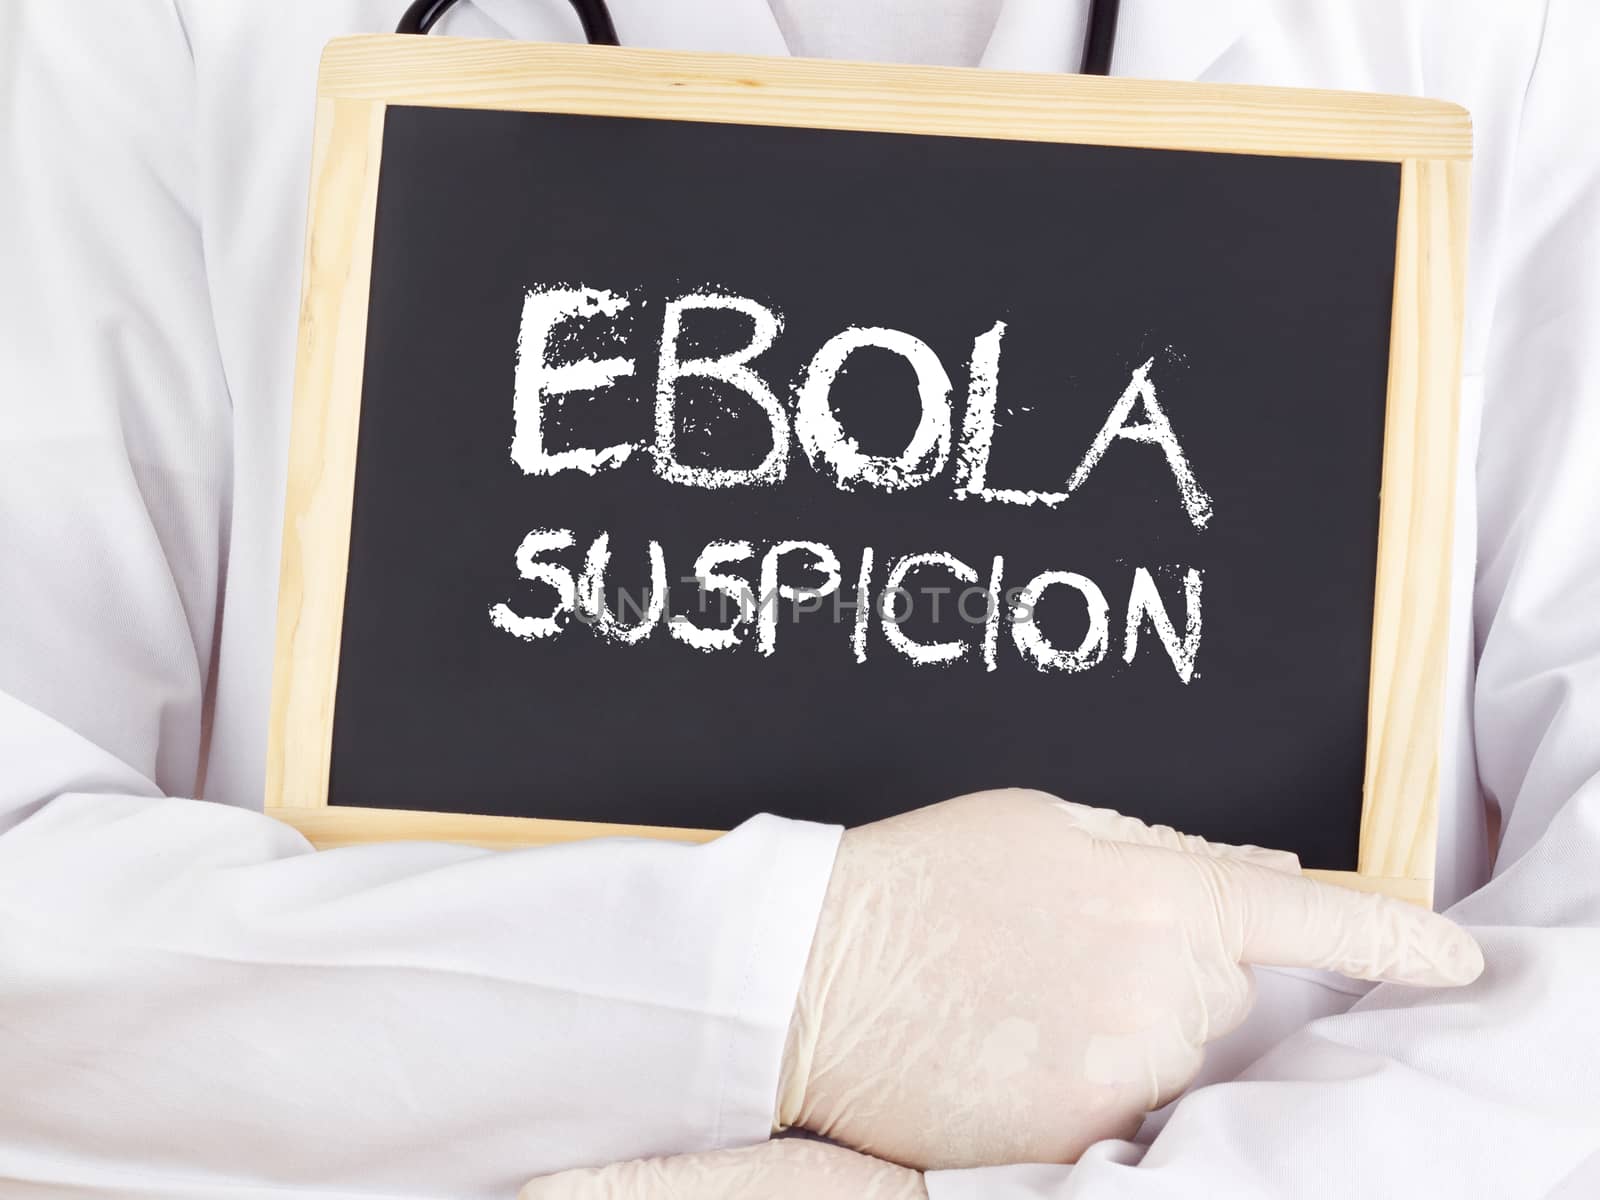 Doctor shows information: Ebola suspicion by gwolters